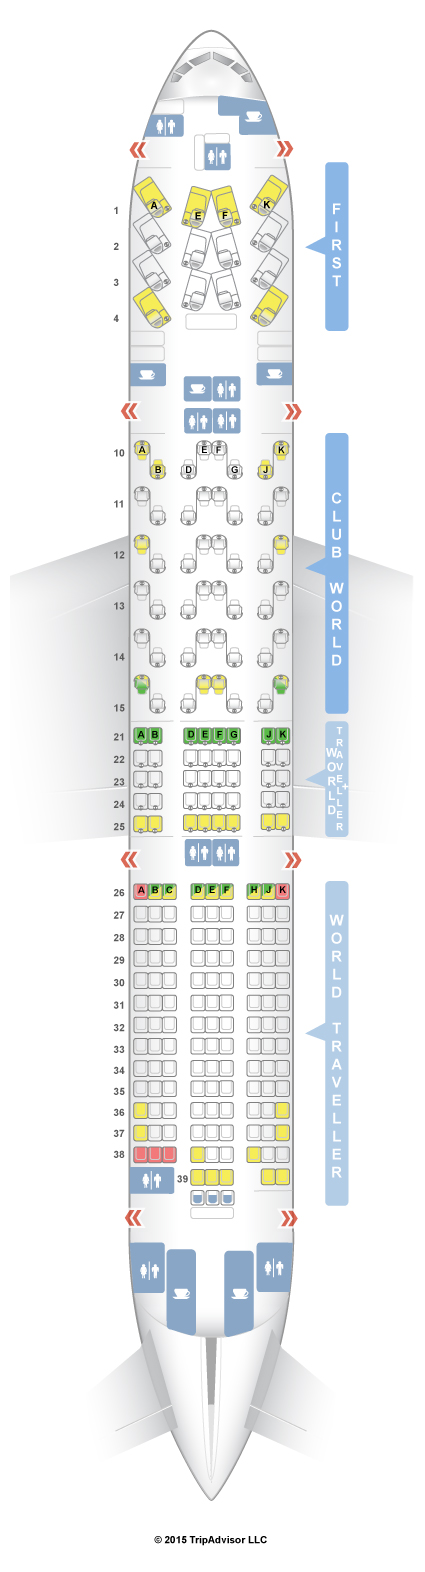 British Airways 777 Seating Chart